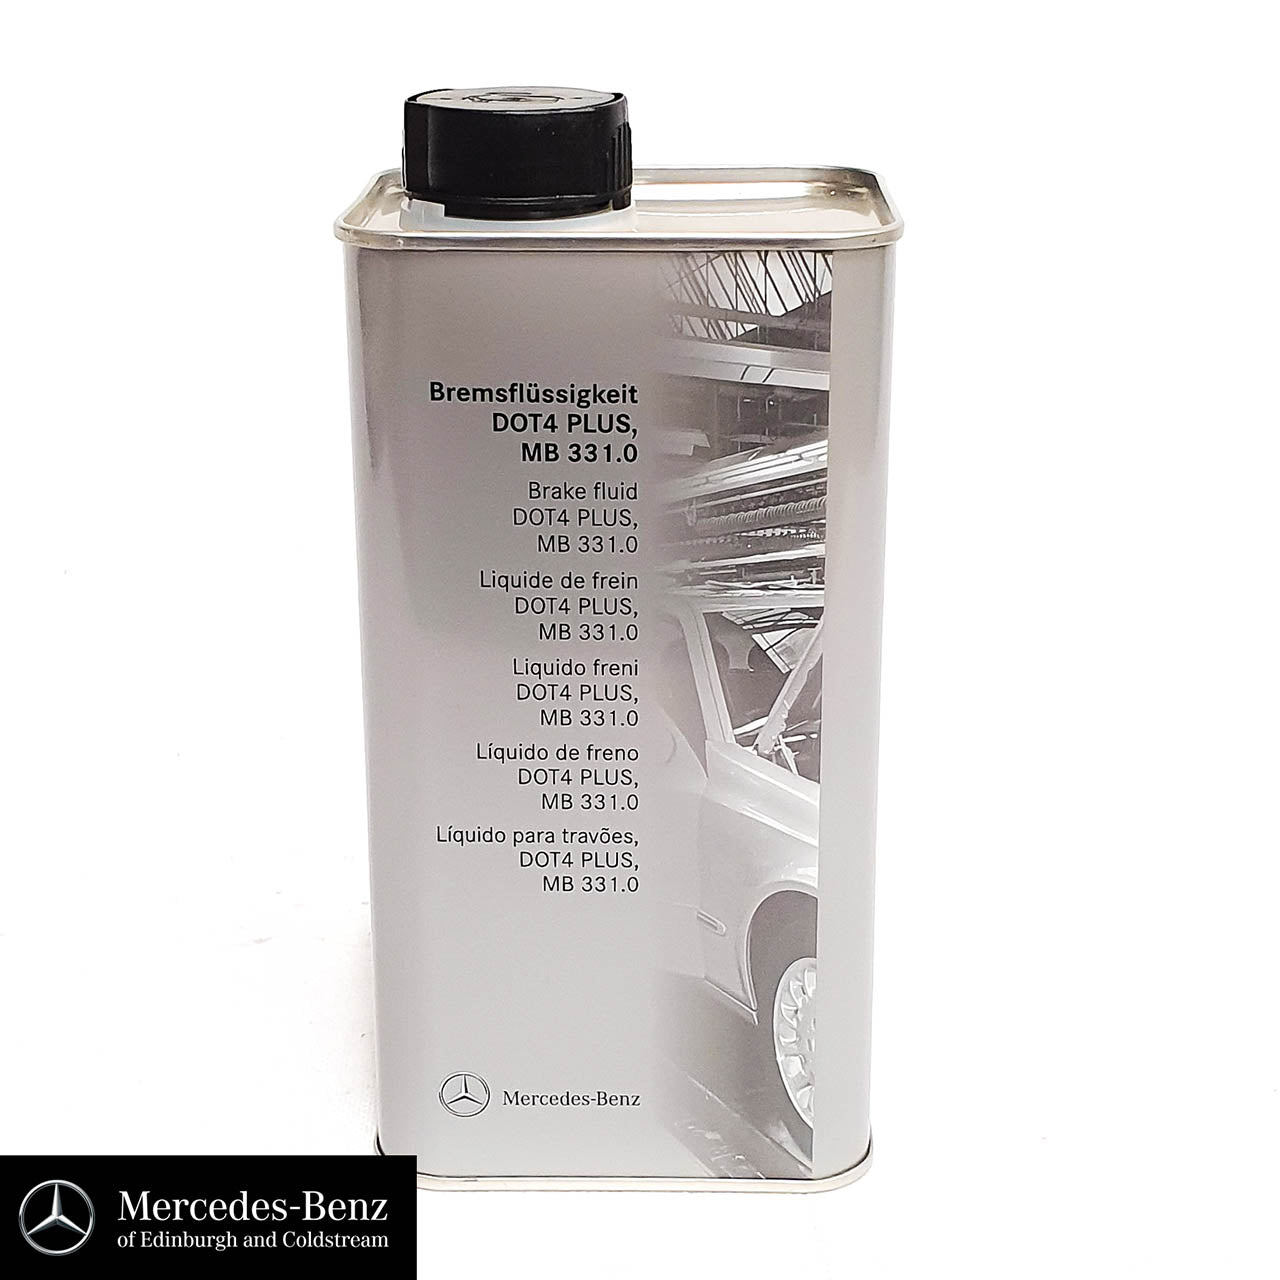 Genuine Mercedes-Benz brake fluid MB331.0 DOT4